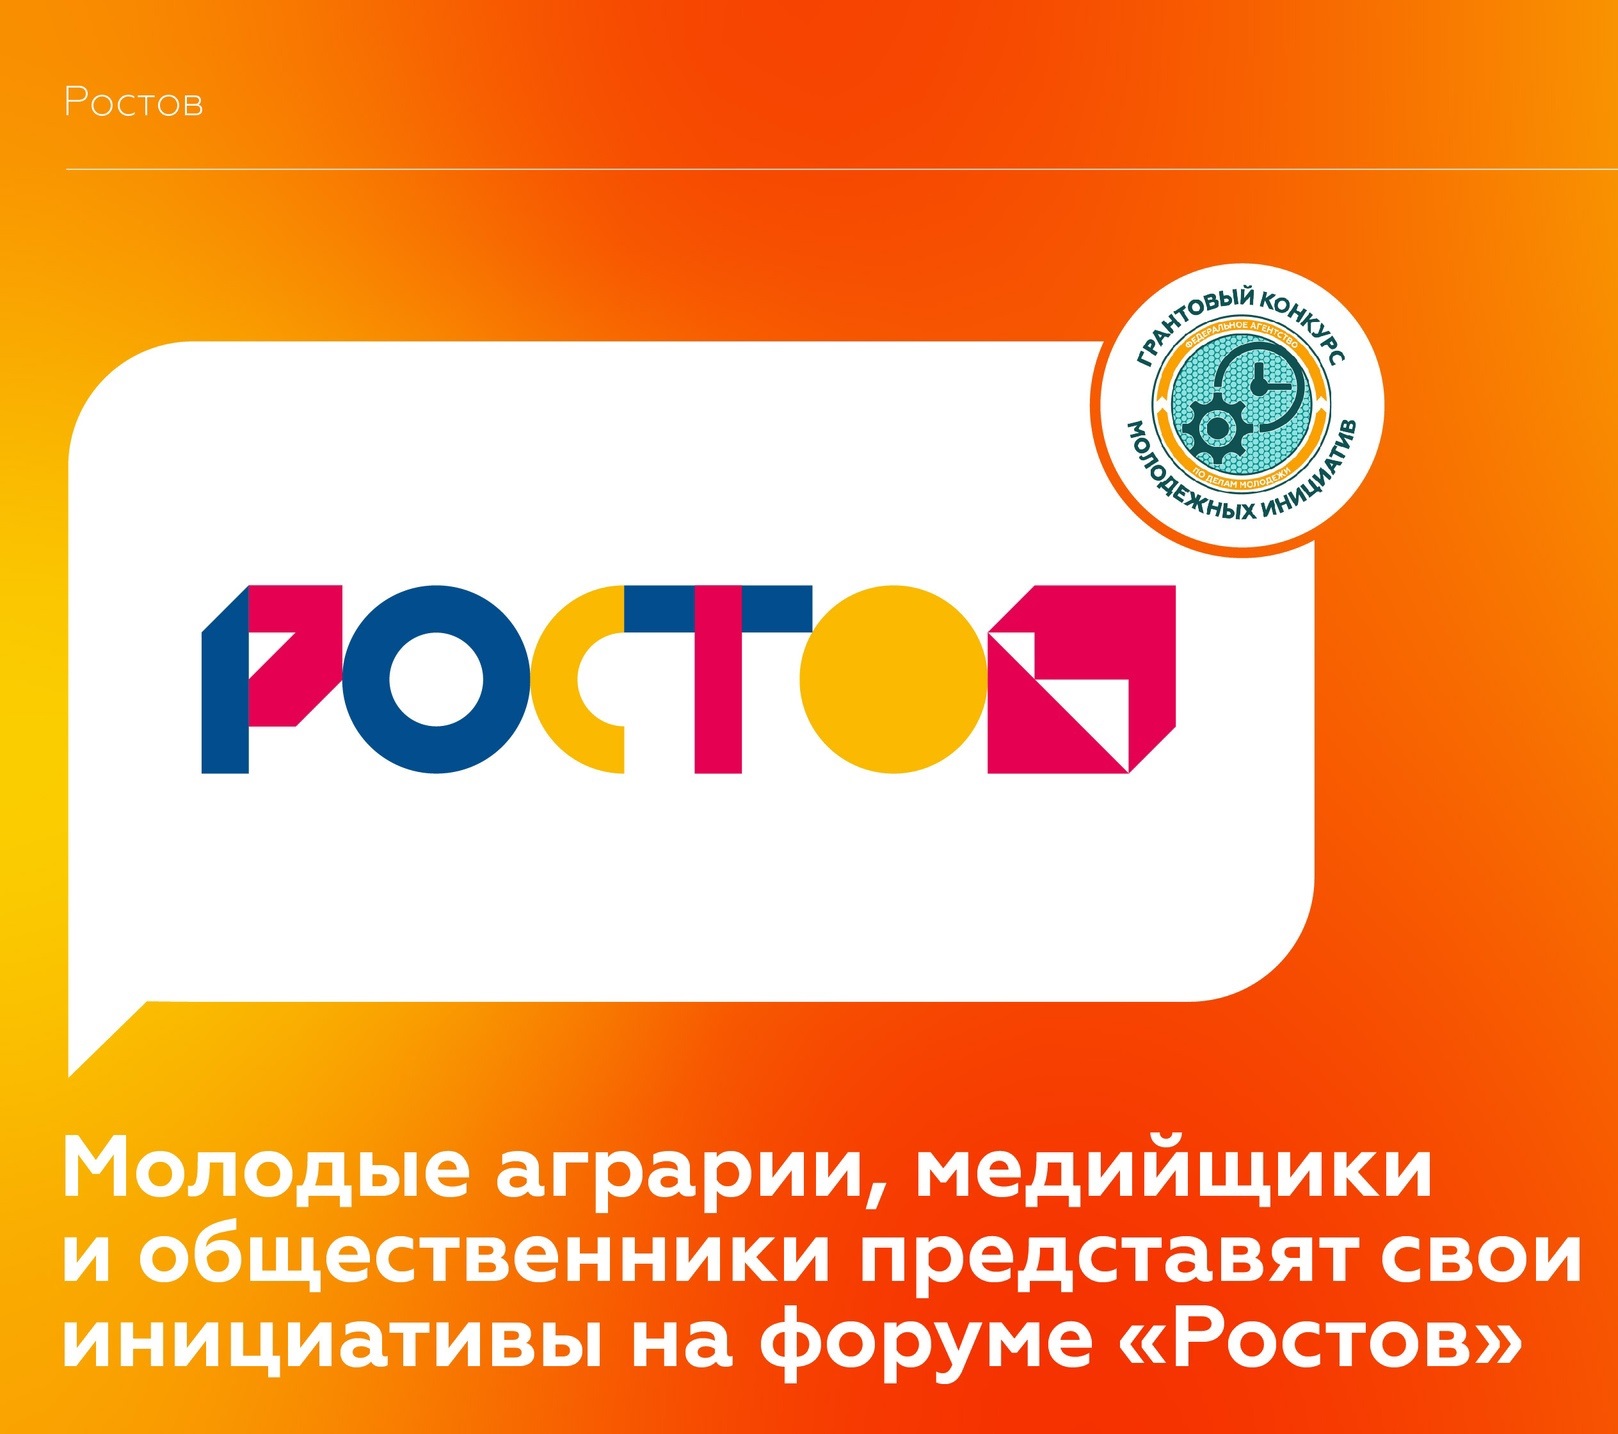 Молодёжный форум «Ростов» 